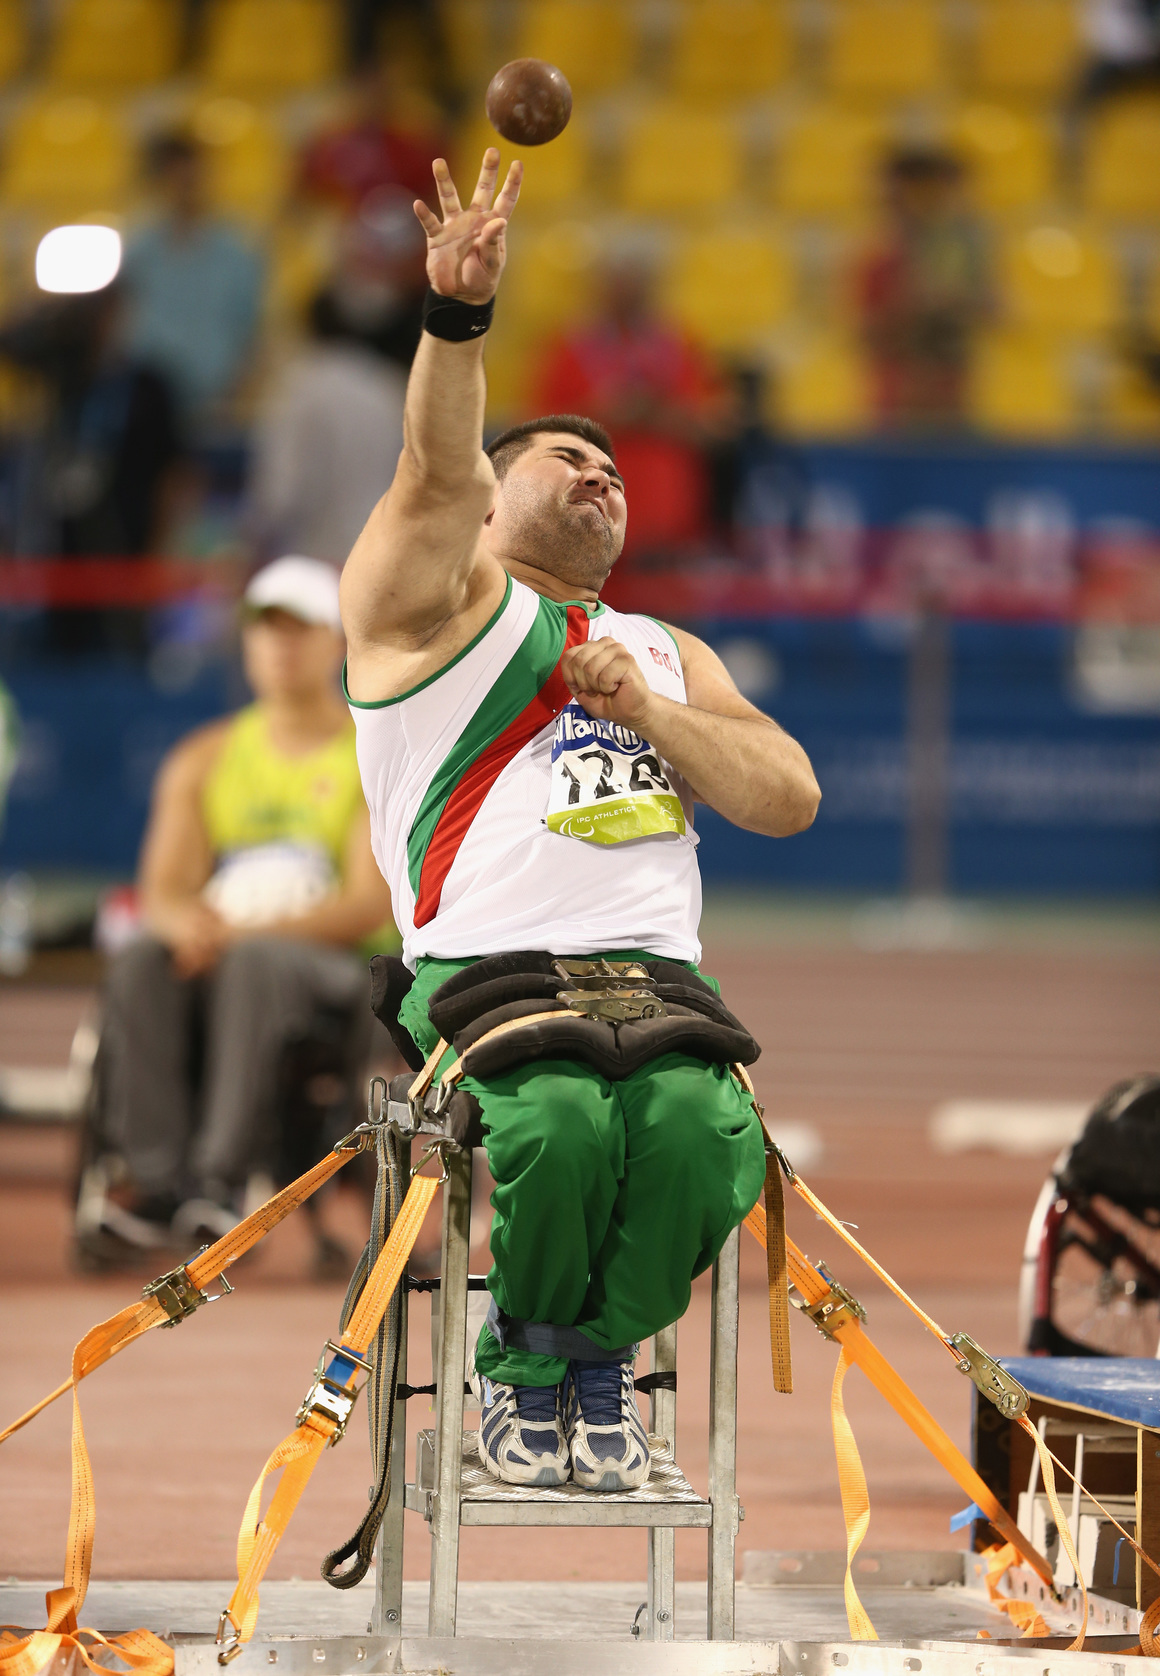 <p><strong>Пореден важен медал за Ружди Ружди</strong></p>

<p>Ружди Ружди прибави още един медал към колекцията си от Параолимпийски отличия - този път сребърен. След като в Рио де Жанейро през 2016 българинът спечели златото, сега остана втори в тласкането на гюле.</p>

<p>Той успя да запише постижение от 12.23 метра. Шампион стана бразилецът Уолъс Сантос, който постигна 12.63 м в последния си опит и подобри световния рекорд на Ружди от 2017 г., който беше 12.47 метра.</p>

<p>30-годишният българин е двукратен световен шампион в тласкането на гюле.</p>
